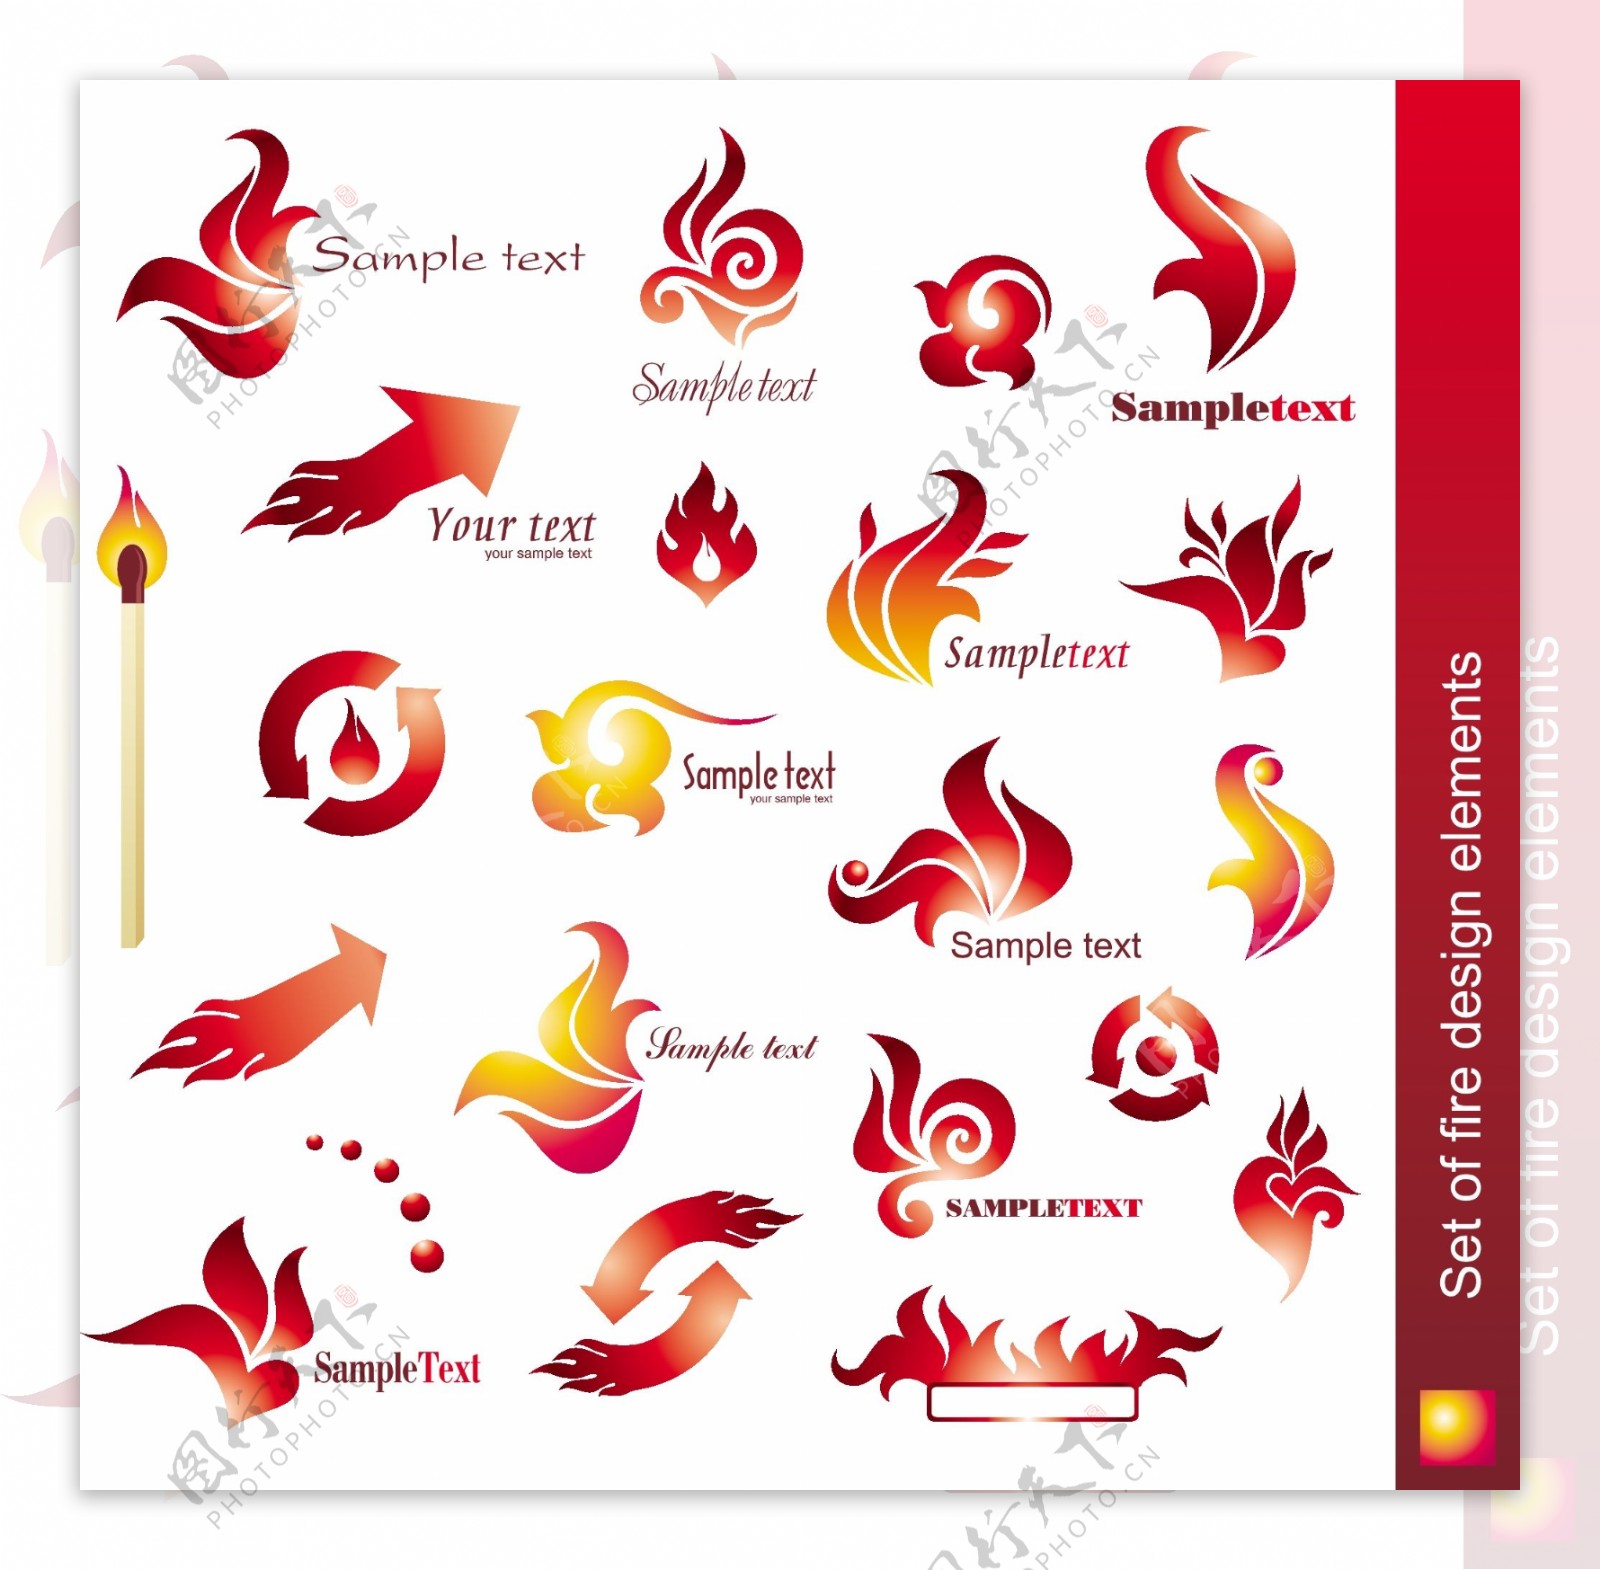 火焰风格logo矢量素材图片